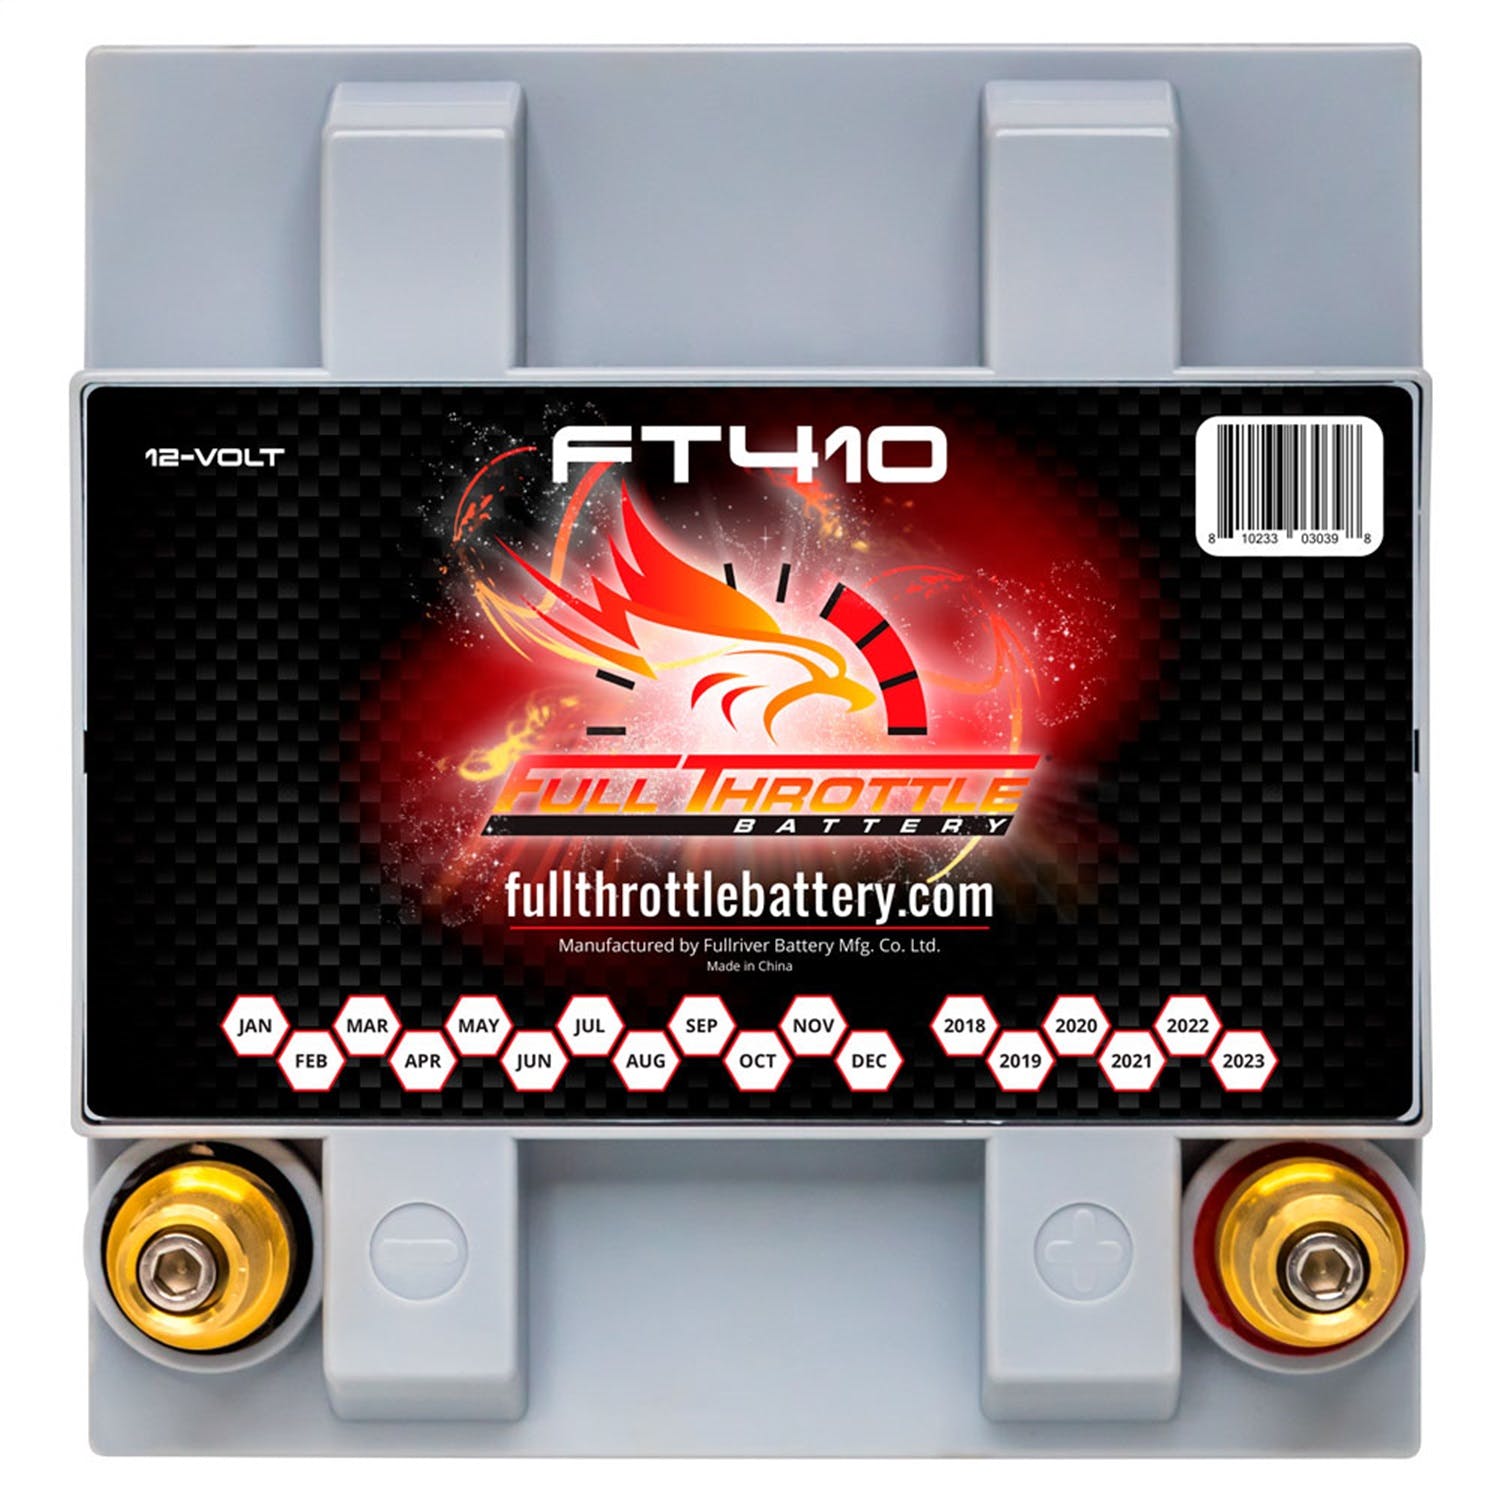 Fullriver Battery FT410 Full Throttle 12V Power Sports Battery